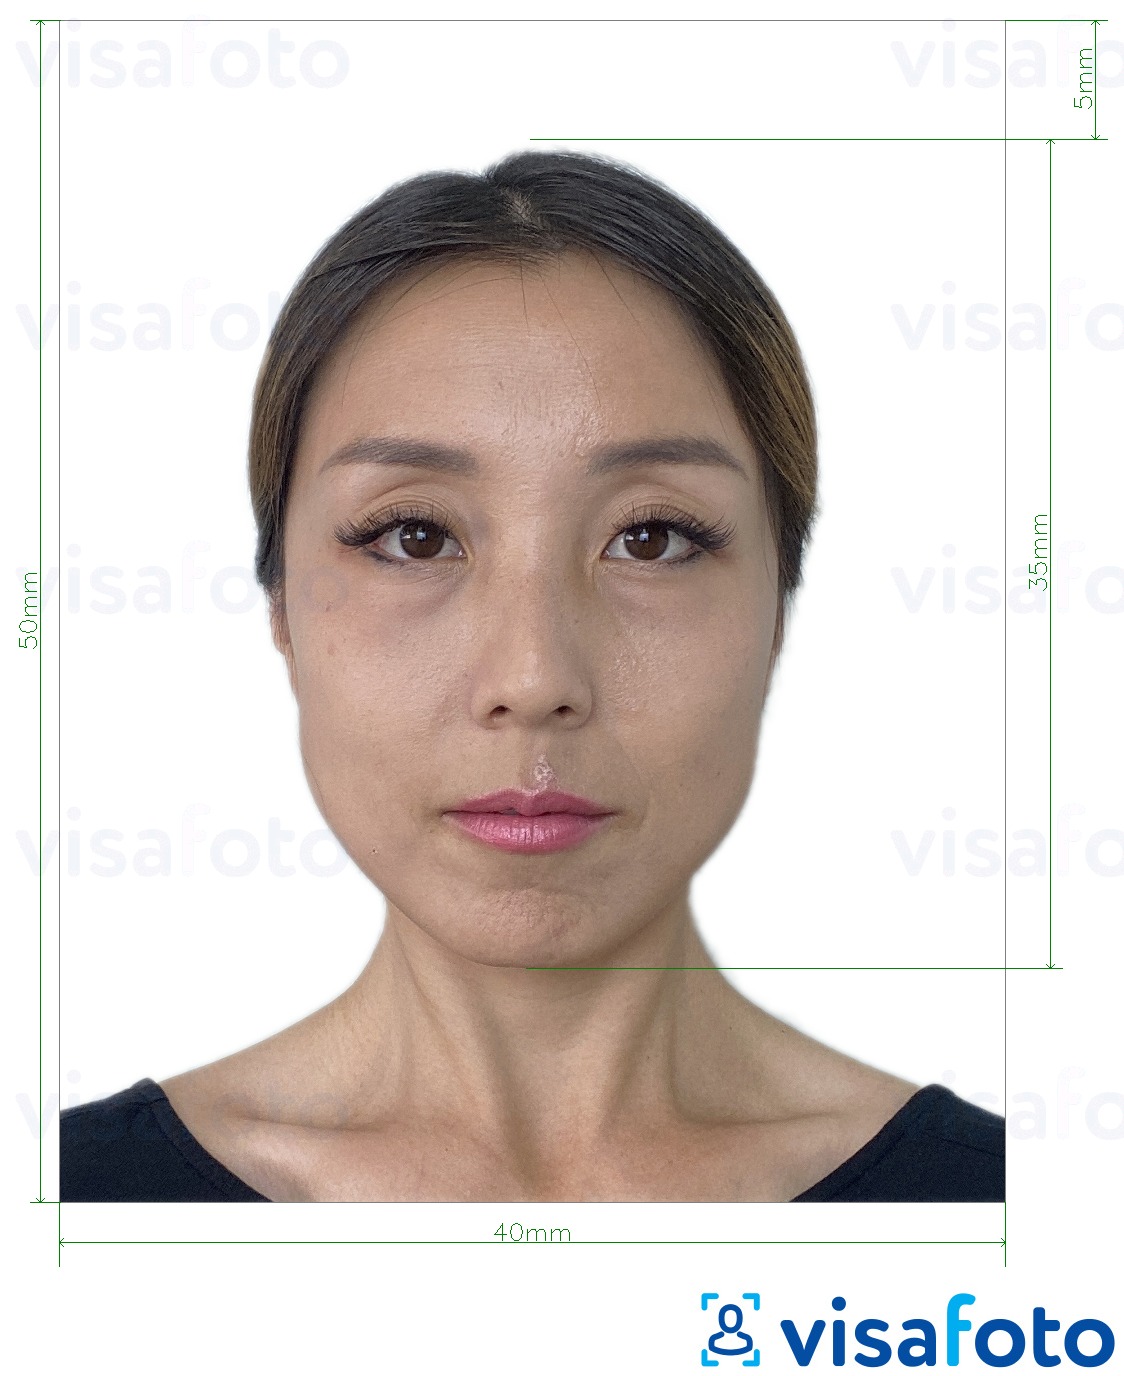 Príklad fotografie pre Hongkonský pas 40x50 mm (4x5 cm) s presnou špecifikáciou veľkosti